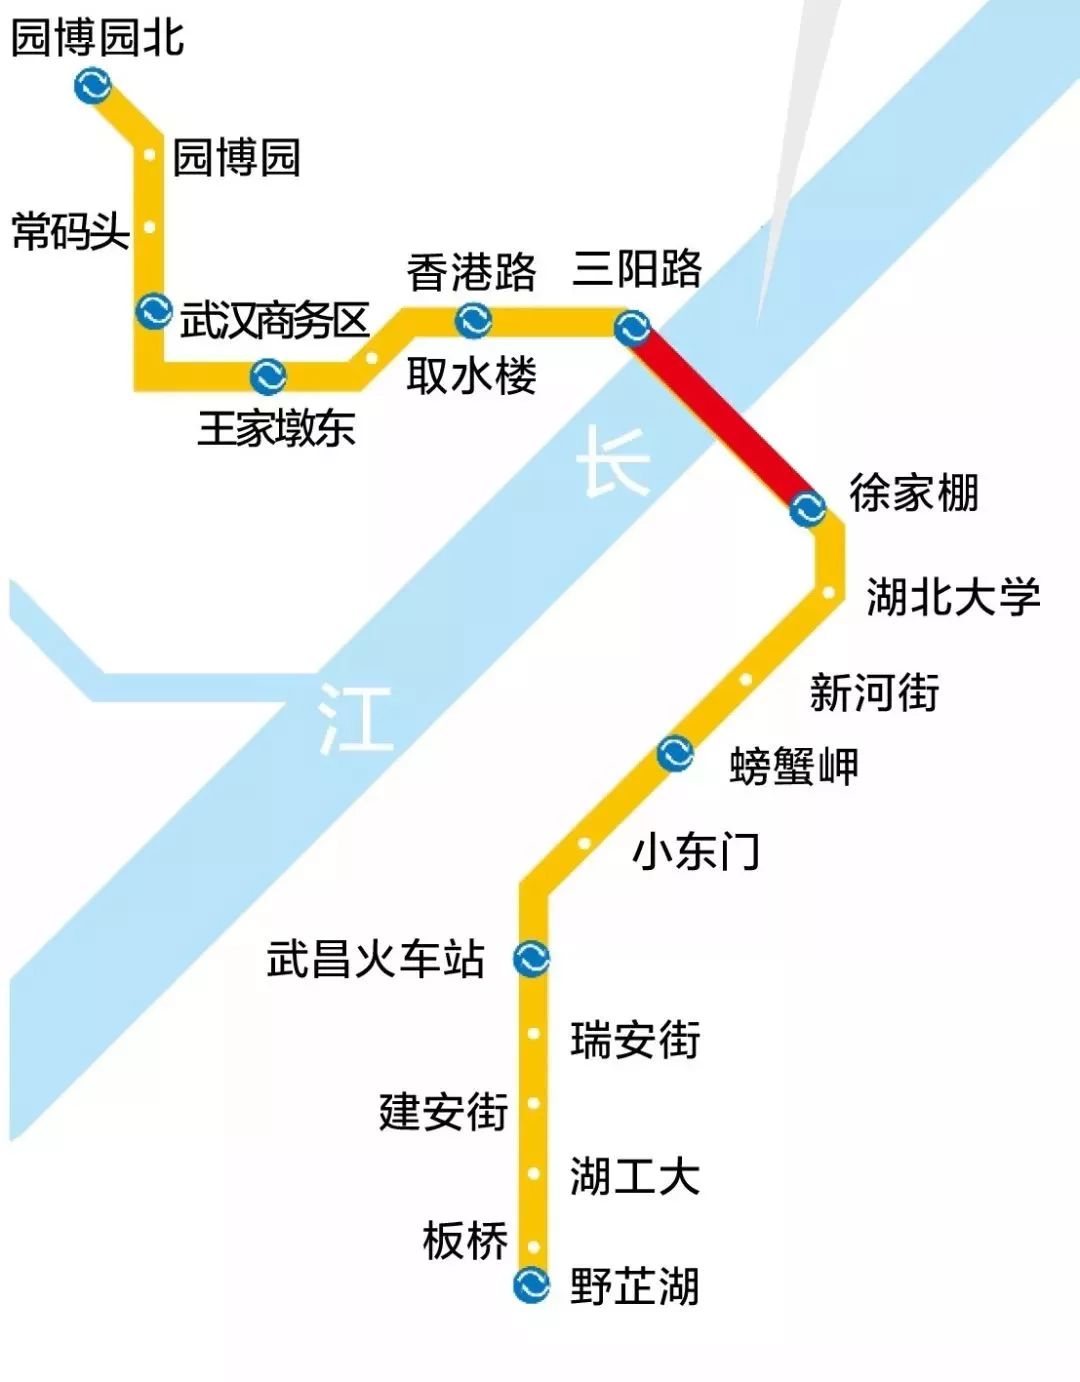 武汉地铁7号线票价图图片